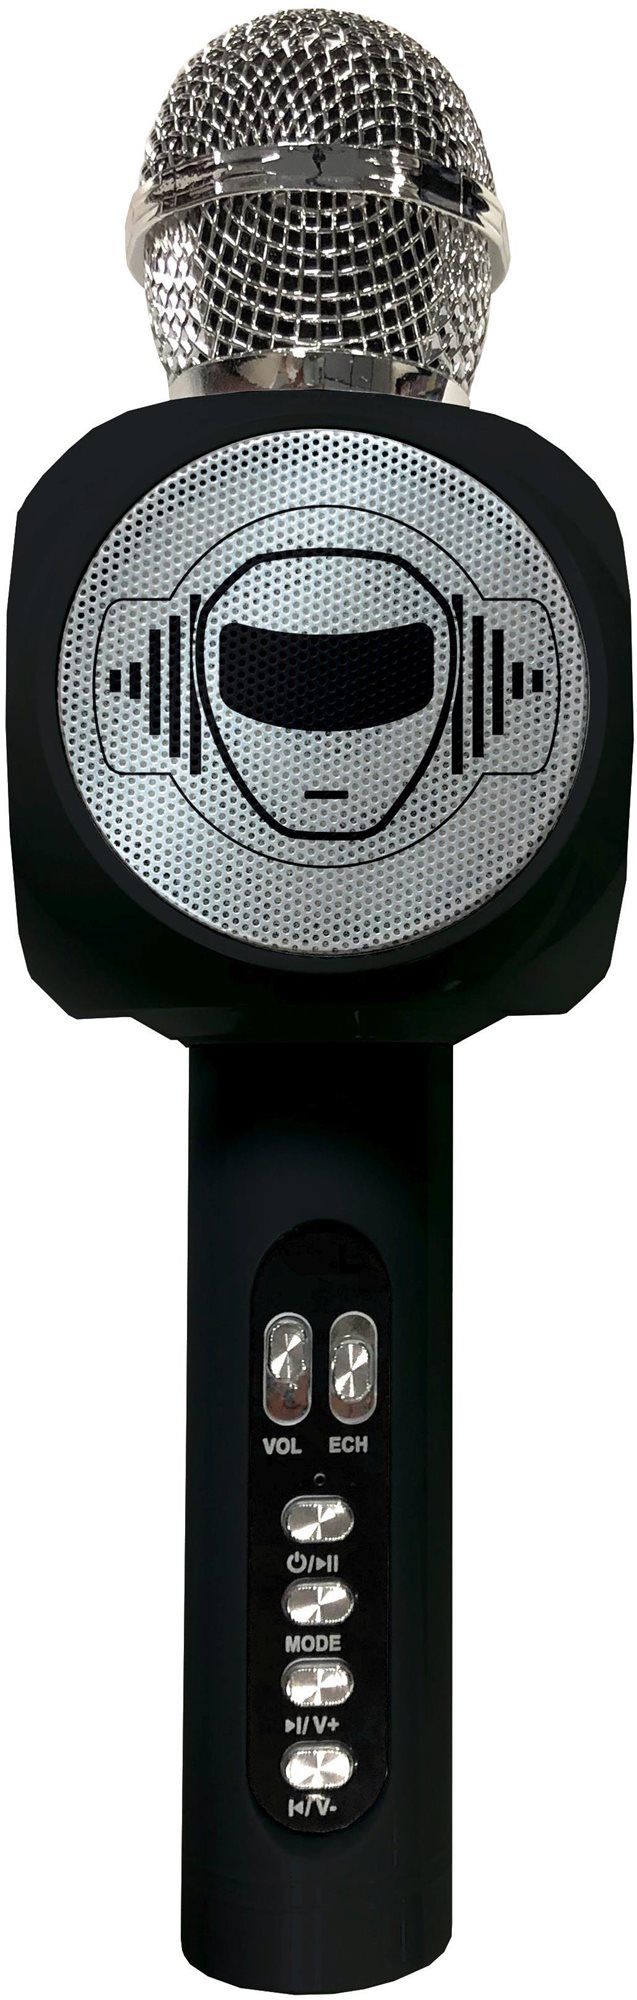 Gyerek mikrofon Lexibook iParty vezeték nélküli karaoke mikrofon beépített hangszóróval és fényhatásokkal